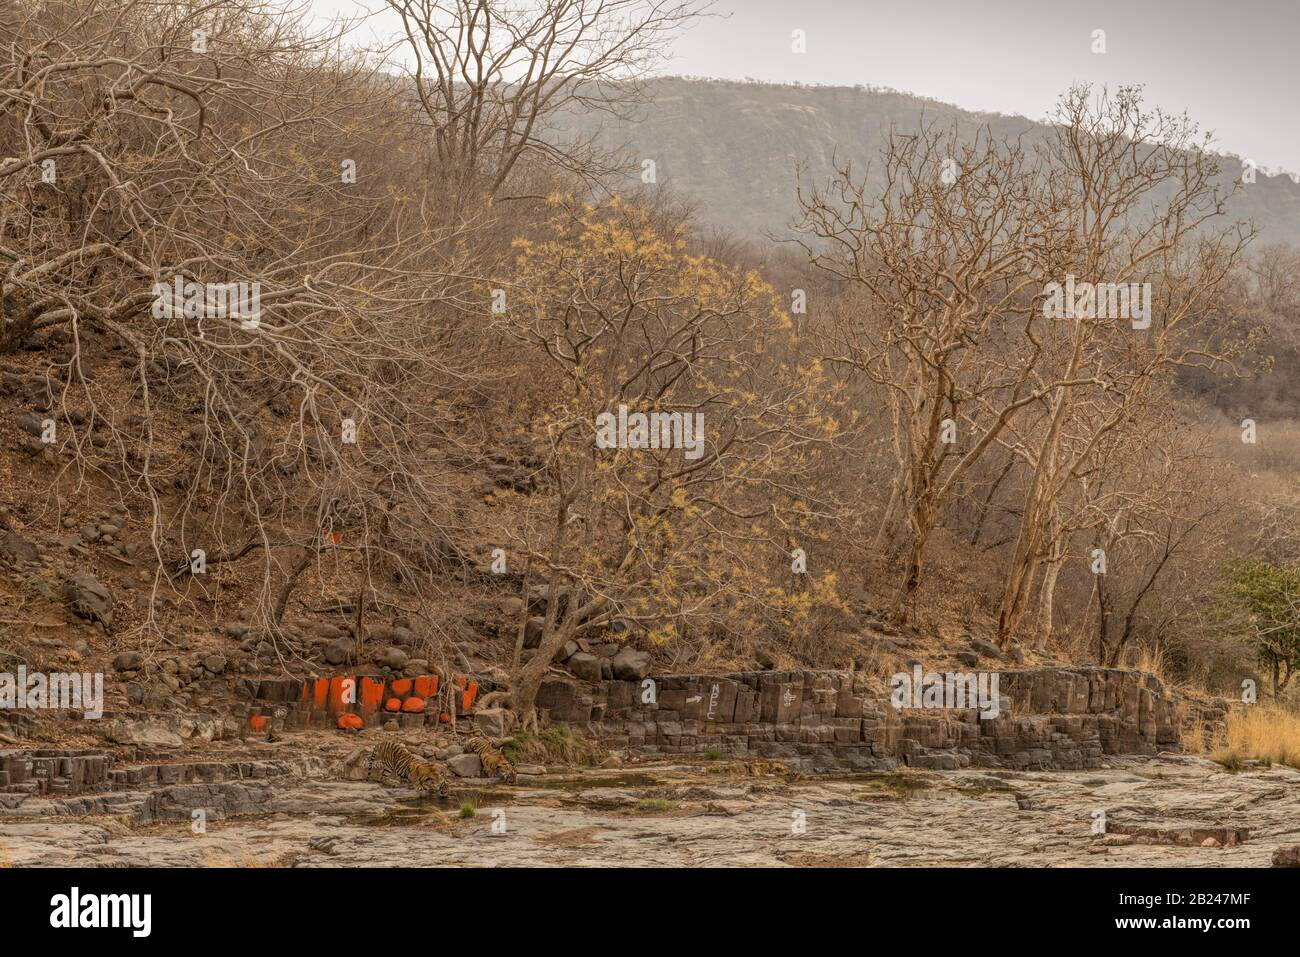 Gros plan incliné de deux tigres sauvages (Panthera tigris tigris) buvant de l'eau d'une flaque rocheuse près d'un temple hindou dans les forêts décideuses sèches Banque D'Images